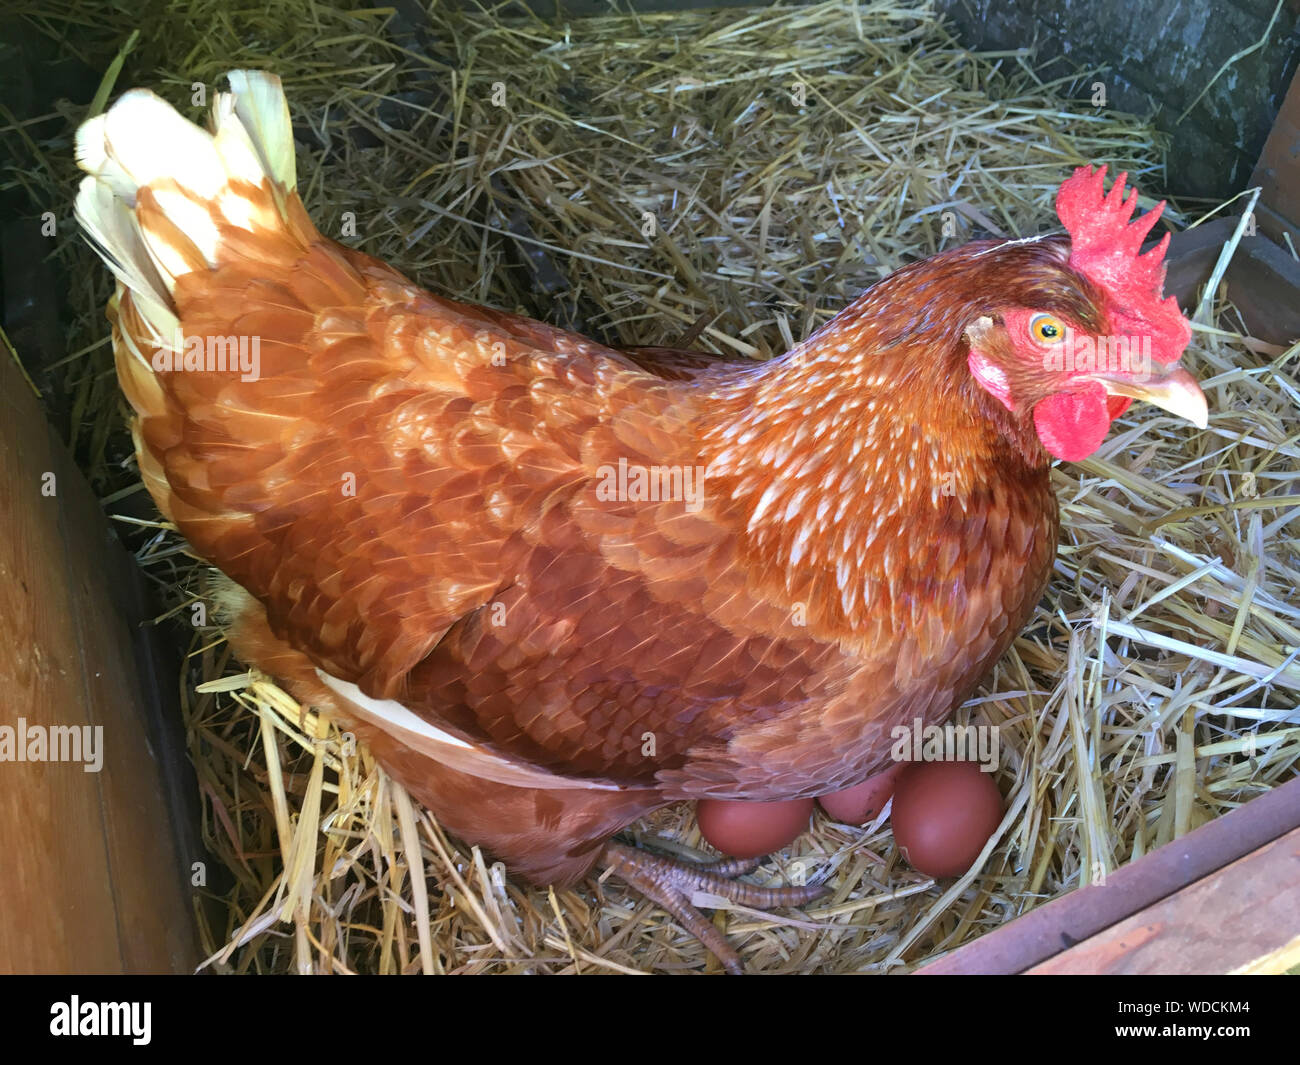 Glücklich gesund freie Strecke/Rind Huhn/Hühner sitzen auf den Eiern ist sie auf Stroh in Ihrem coop gelegt. Die Hennen sind durch eine Familie in ihrem heimischen Garten gehalten. UK. Die reife Henne wurde mit nach Hause genommen und von den Eltern nach einem "Küken schlüpfen in der Schule"-Projekt/Aktivität gehalten. (Stomo) Stockfoto